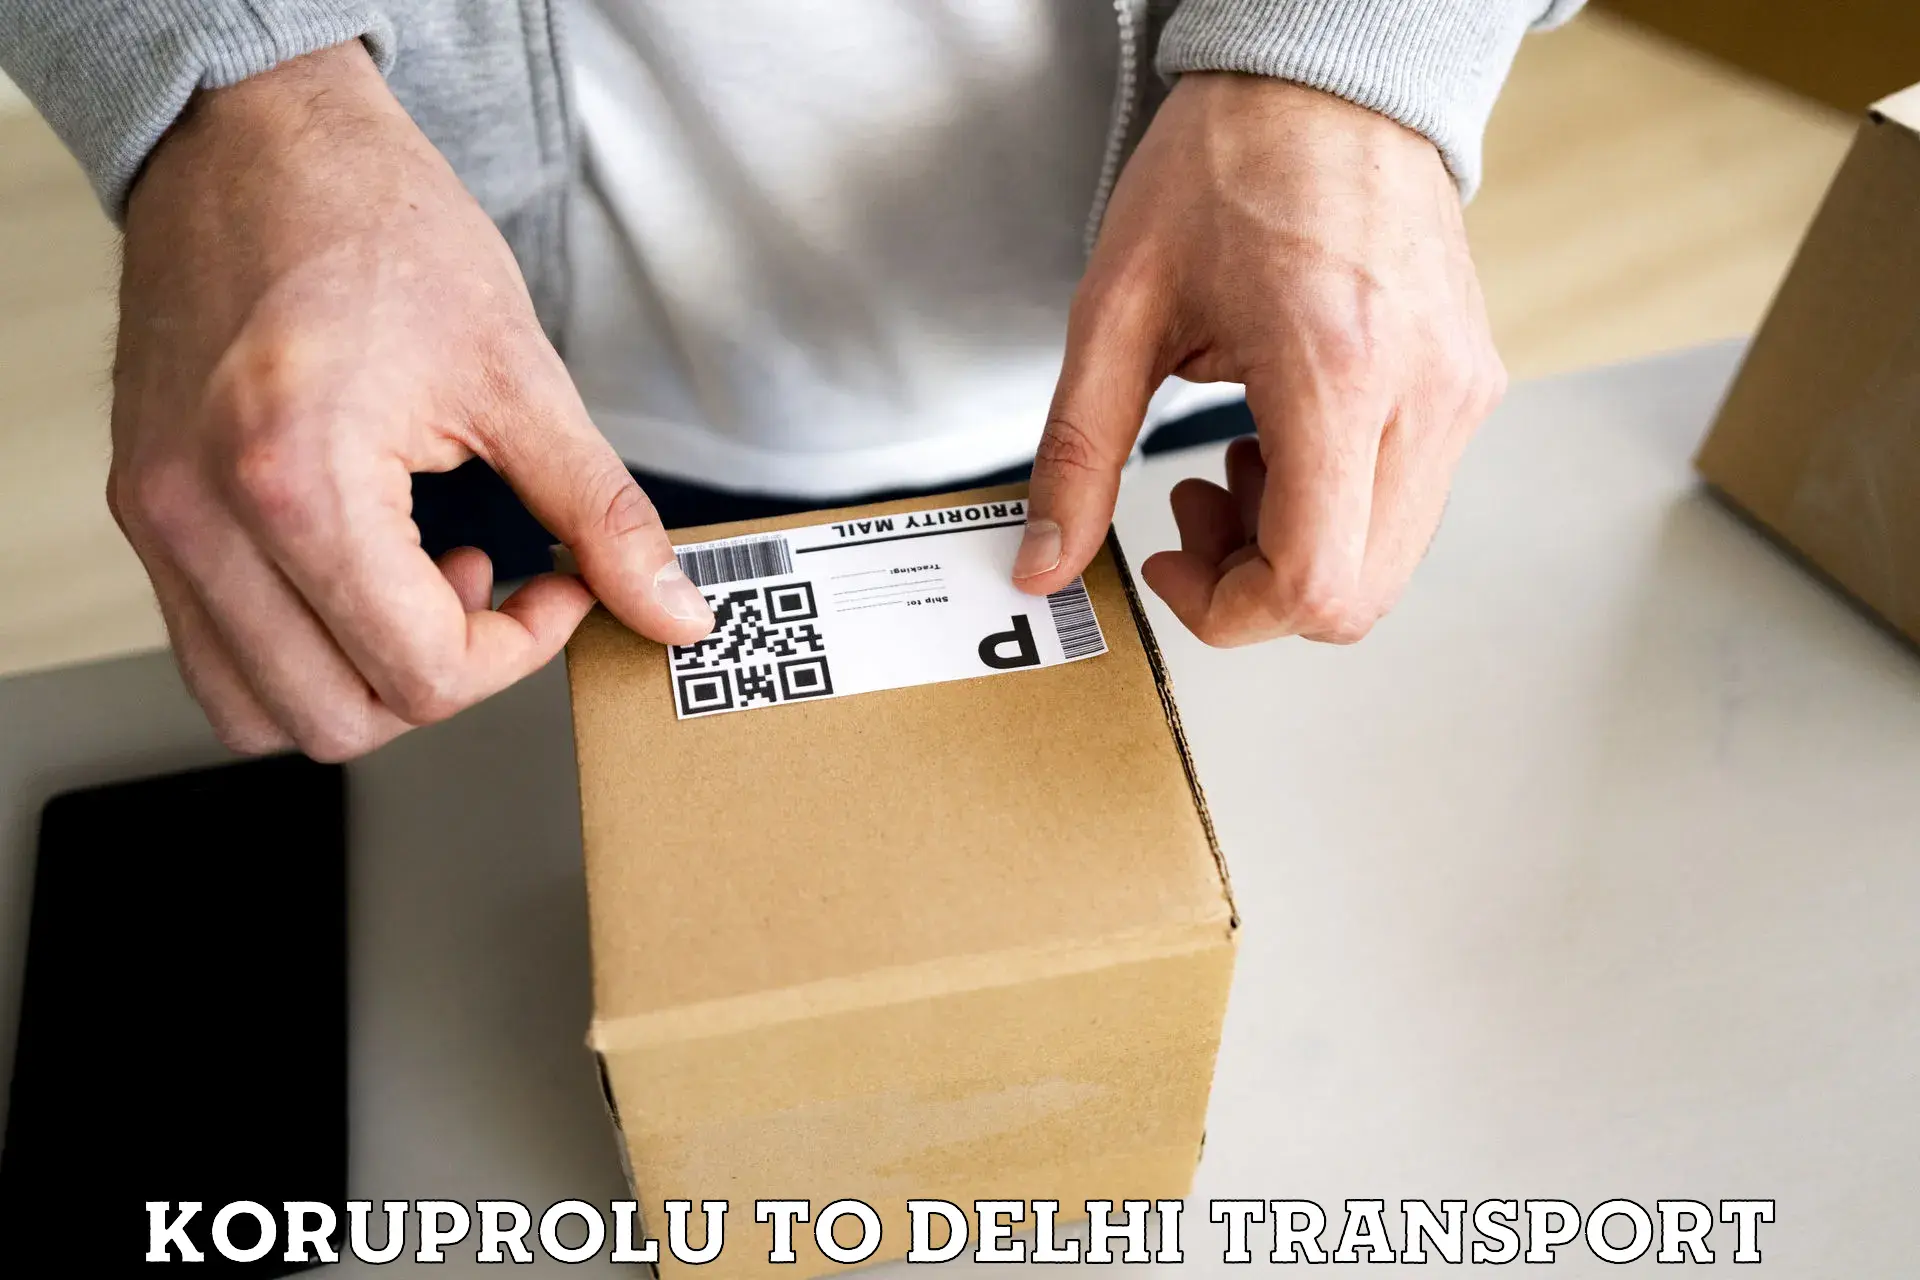 Daily transport service Koruprolu to Subhash Nagar